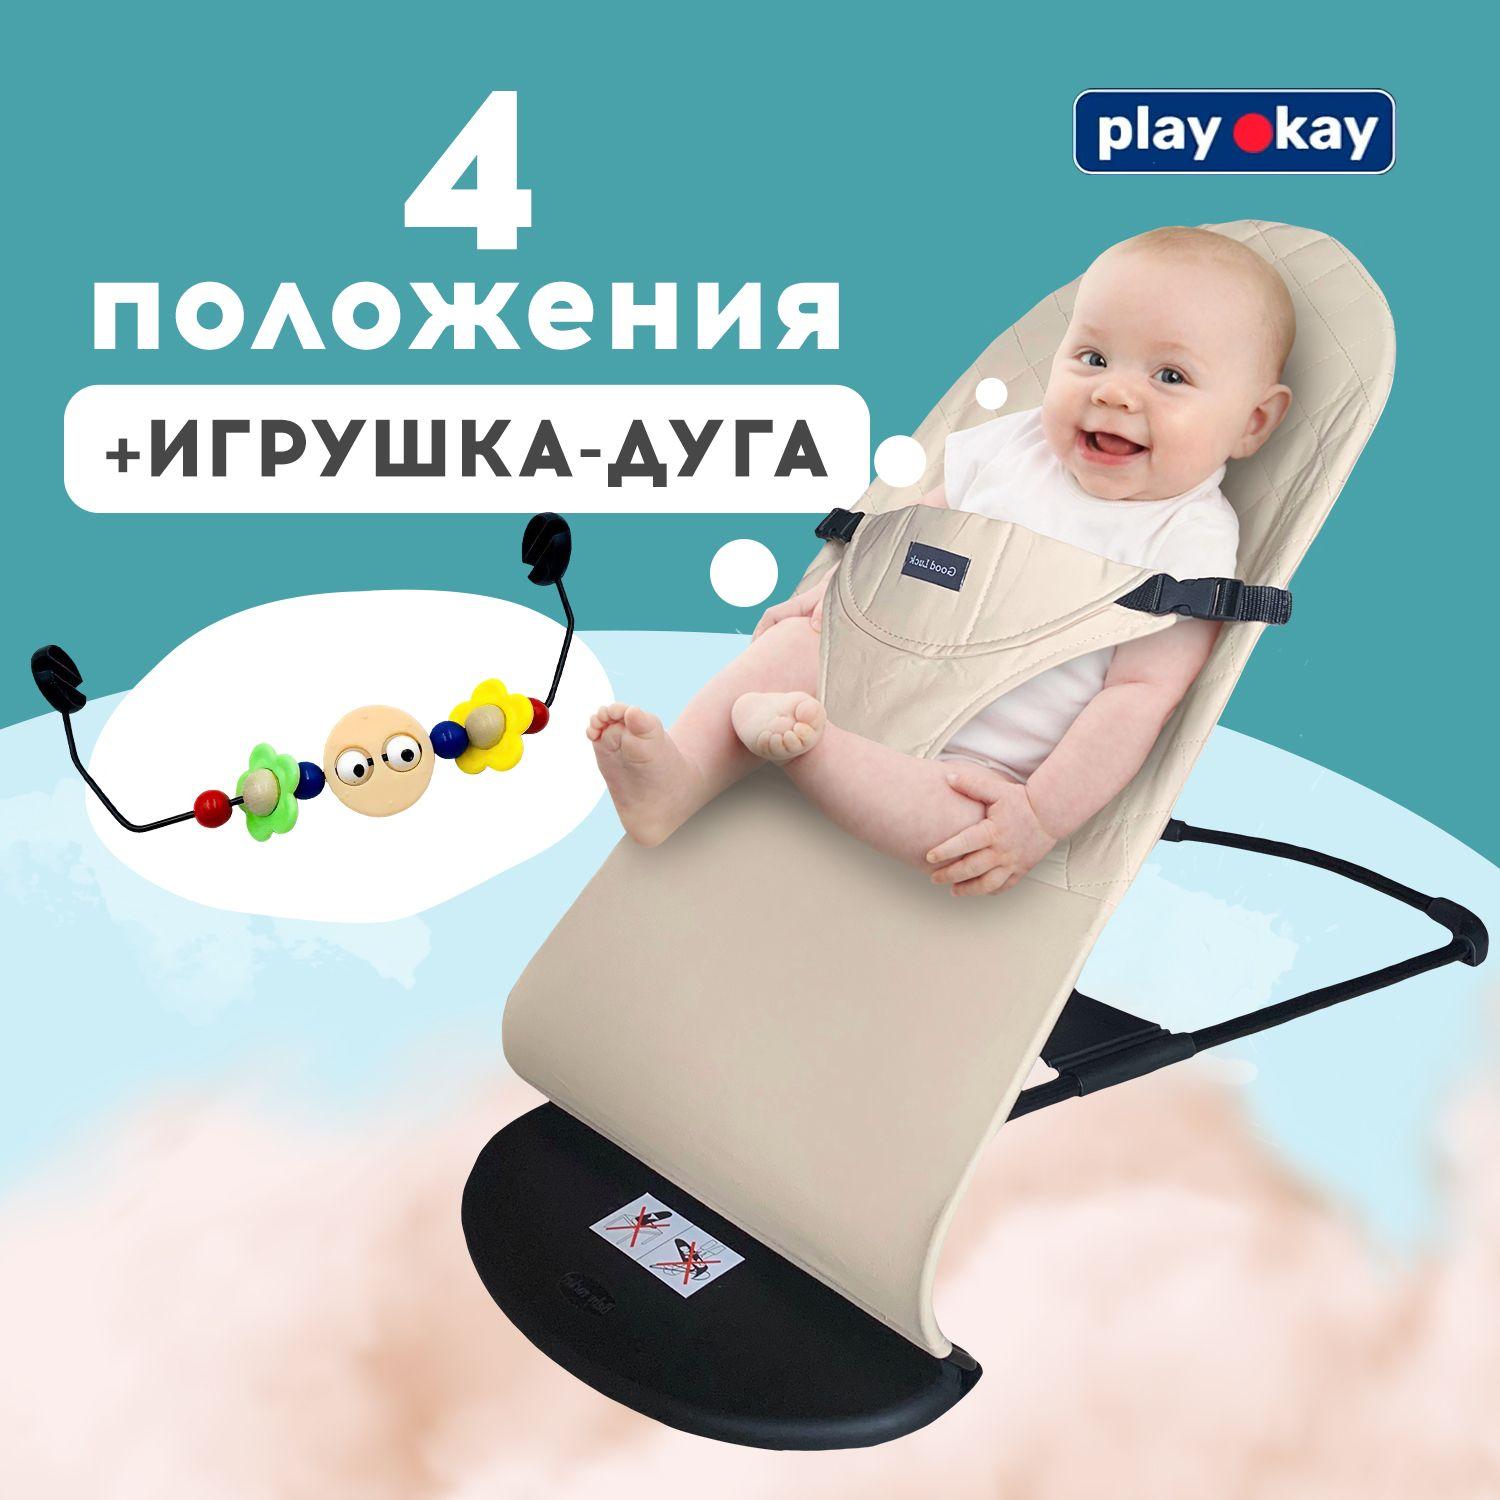 Шезлонг для новорожденных, детское кресло качалка Play Okay с развивающей игрушкой дугой малышу до 15 кг, Материал: тарилен, метал, полипропилен / 78 х 40 х 56 см, Бежевый